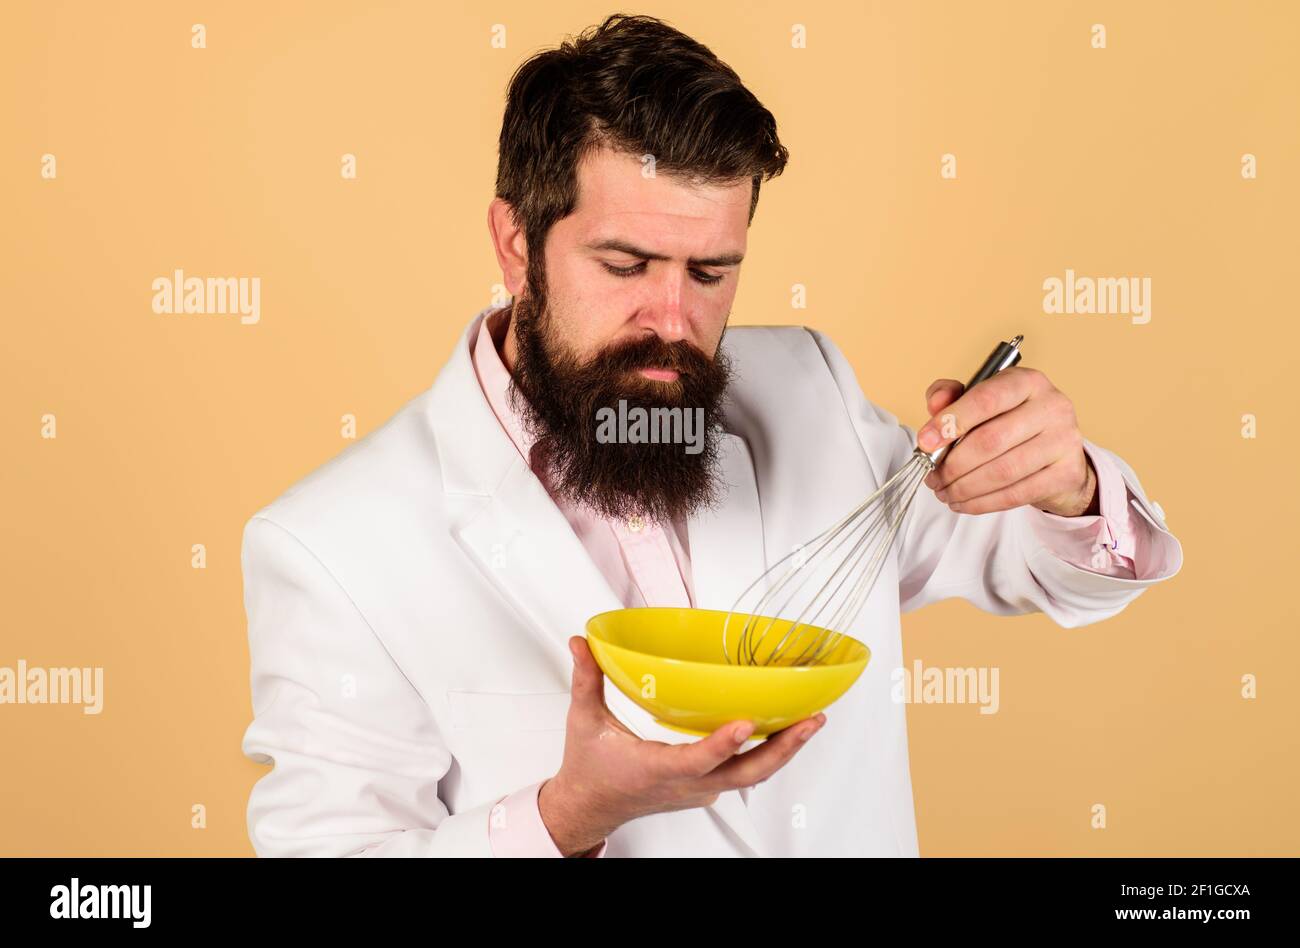 Uomo bearded che prepara le uova per la colazione. Montare l'uovo nel recipiente per cucinare le omelette o l'impasto. Cucina, cucina e concetto di cucina. Foto Stock